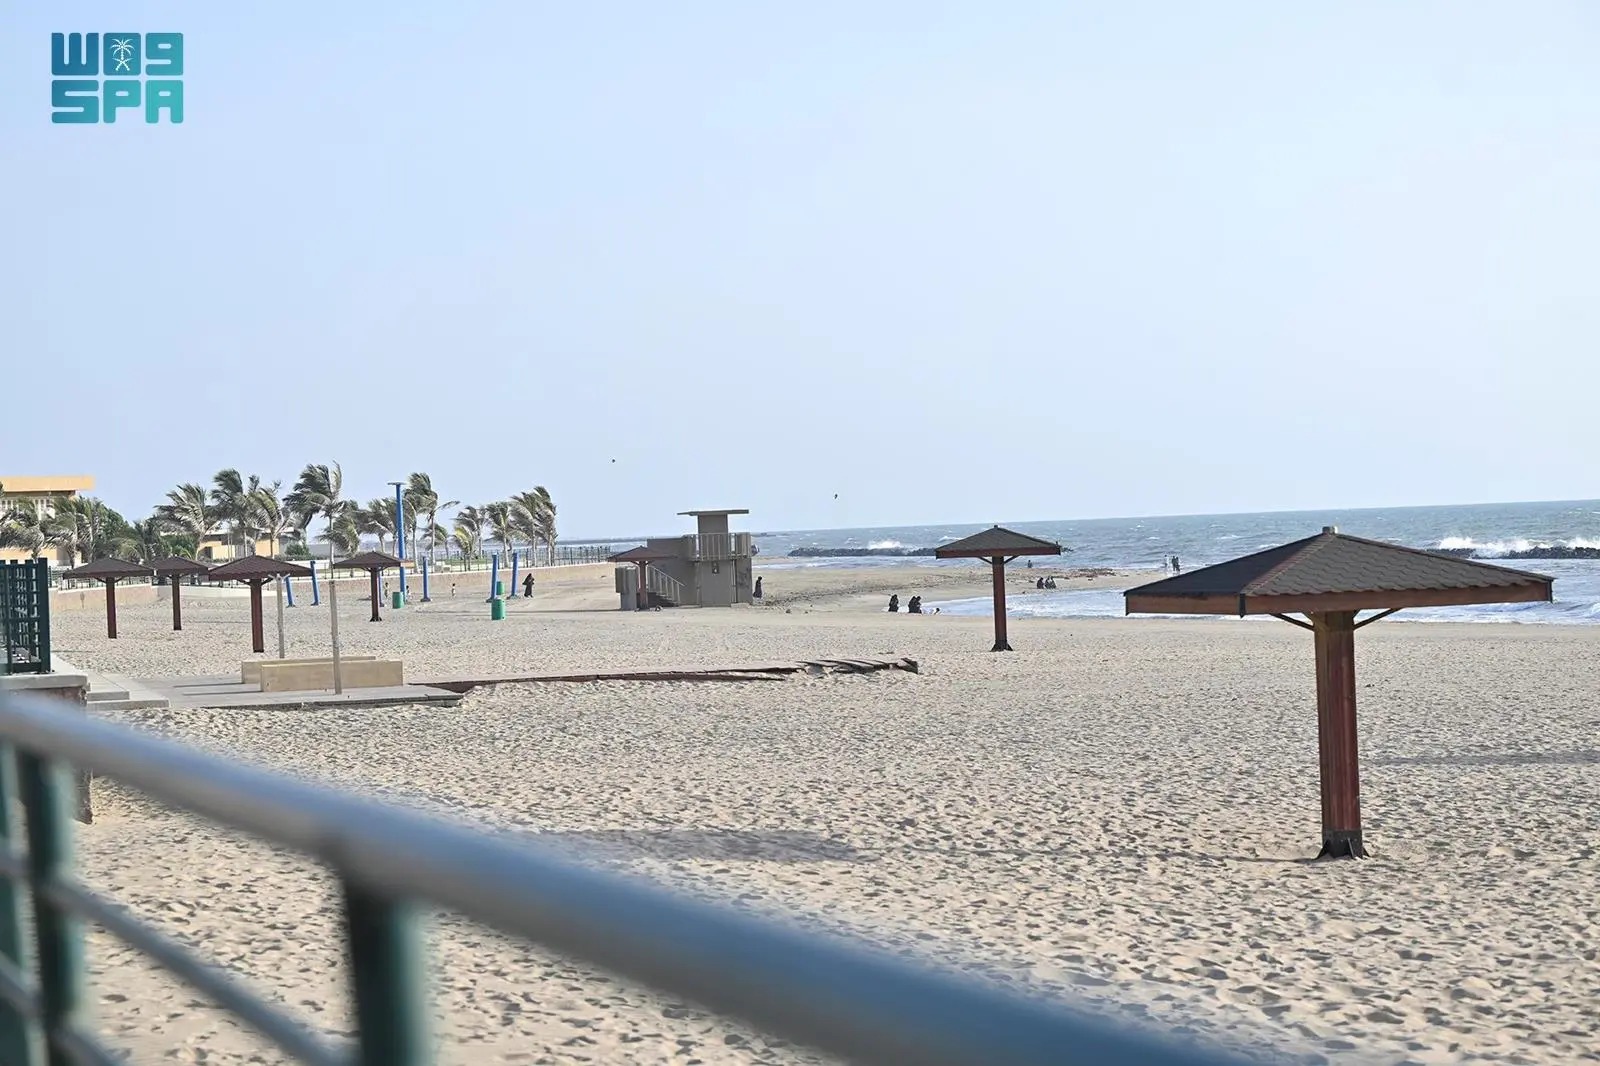  كورنيش شاطئ محافظة بيش يشهد كثافة في أعداد المتنزهين